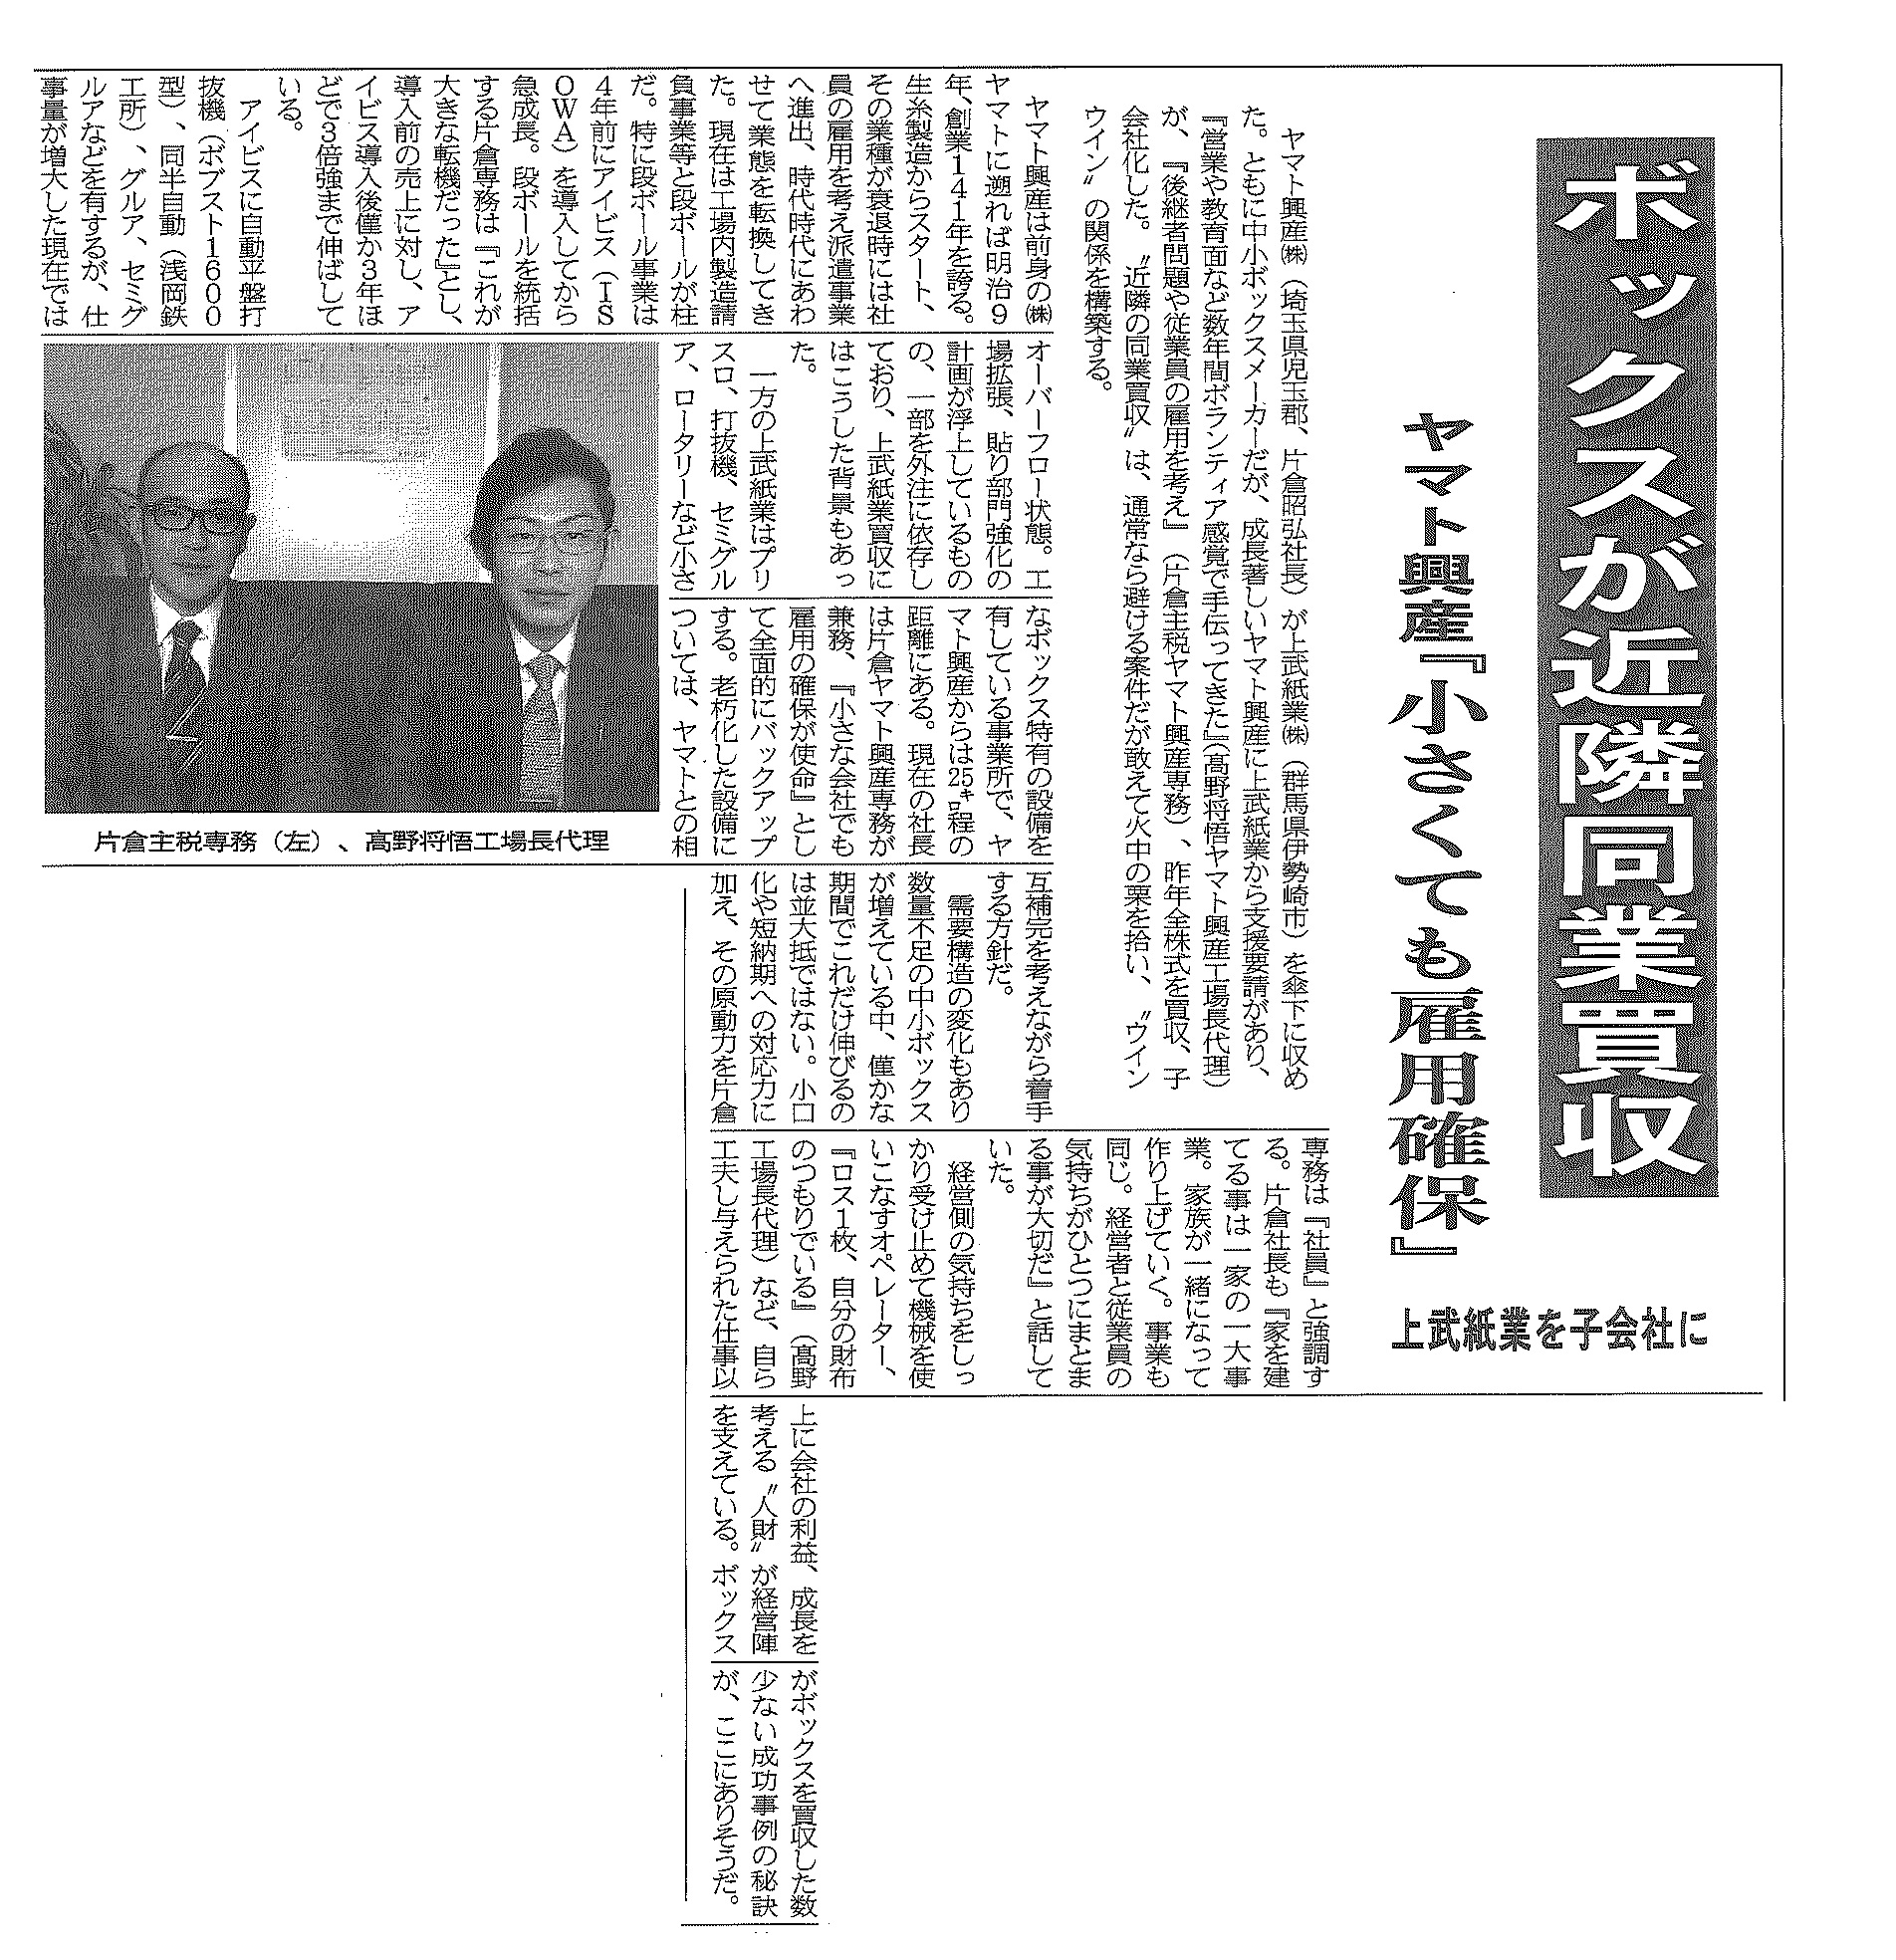 3月17日発行 板紙 段ボール新聞掲載 ヤマト興産株式会社